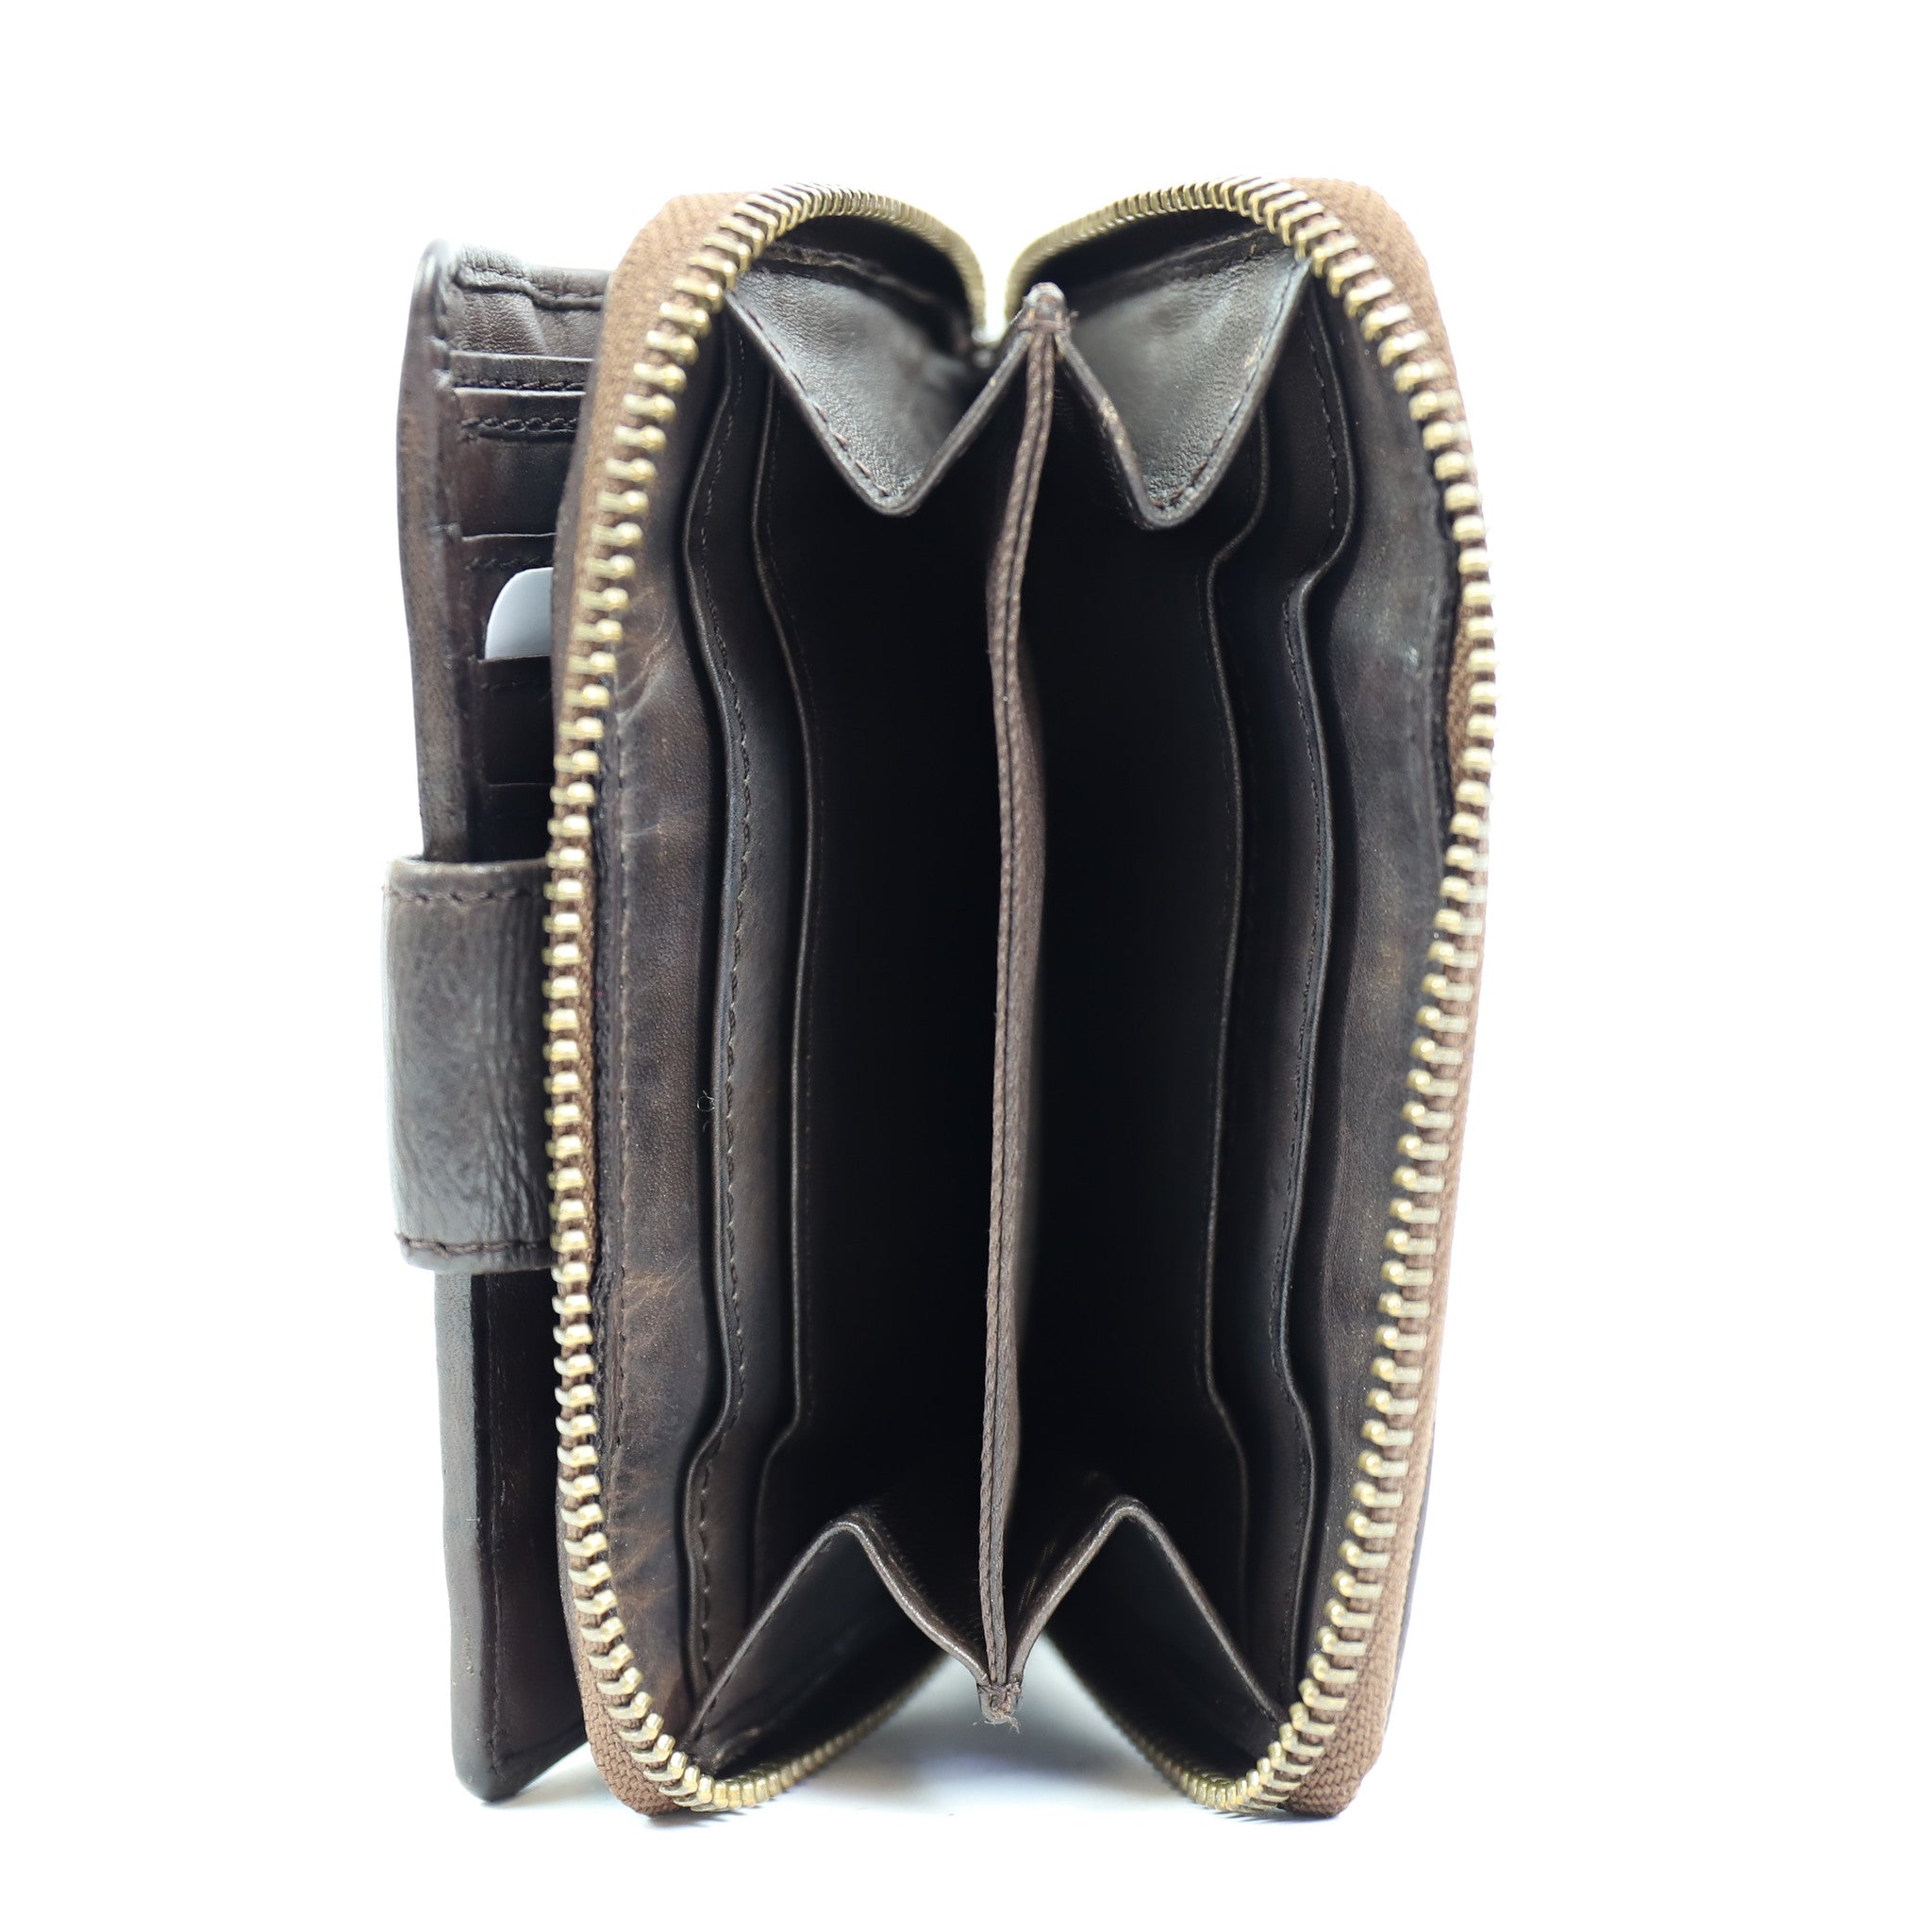 Zipper wallet 'Loet' dark brown - CL 13550